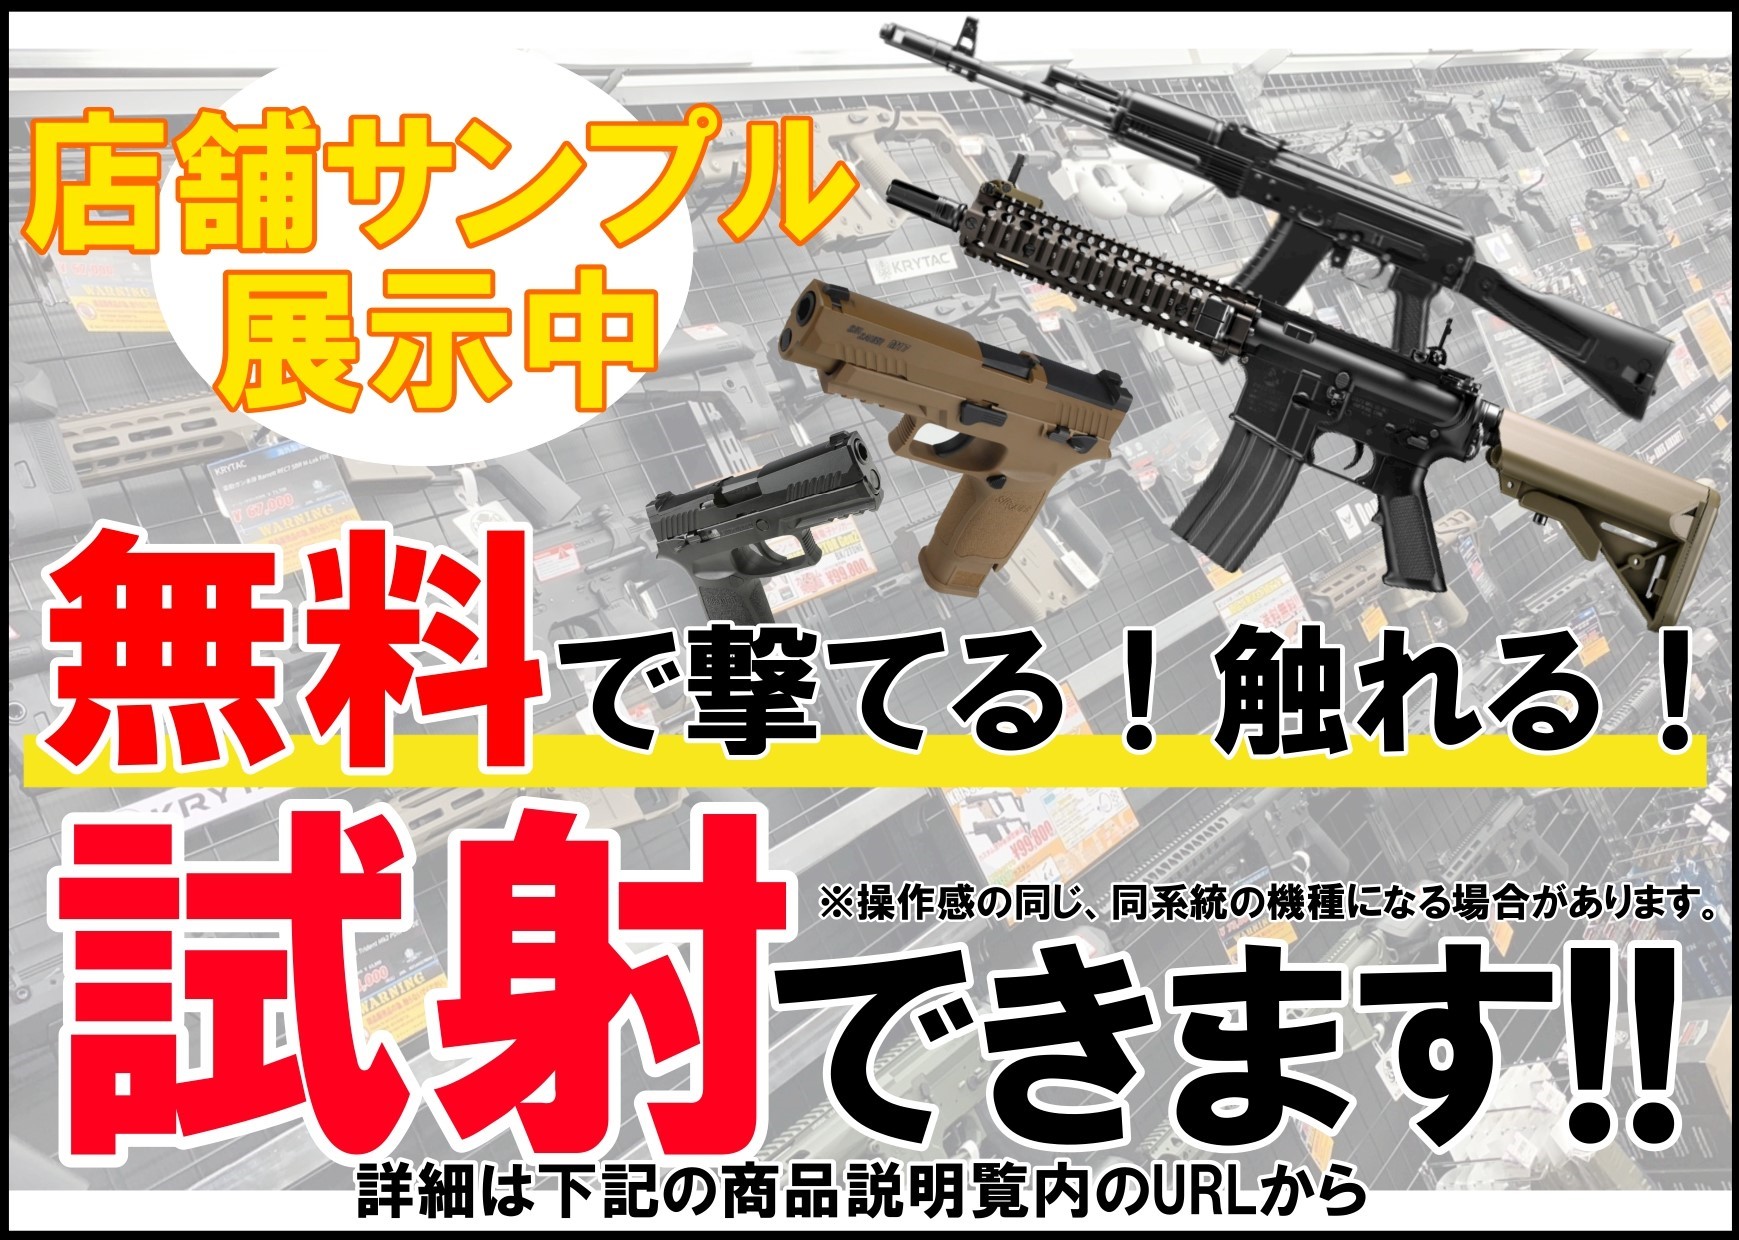 東京マルイ: MK18 MOD.1 ガスブローバックライフルの通販情報 ...